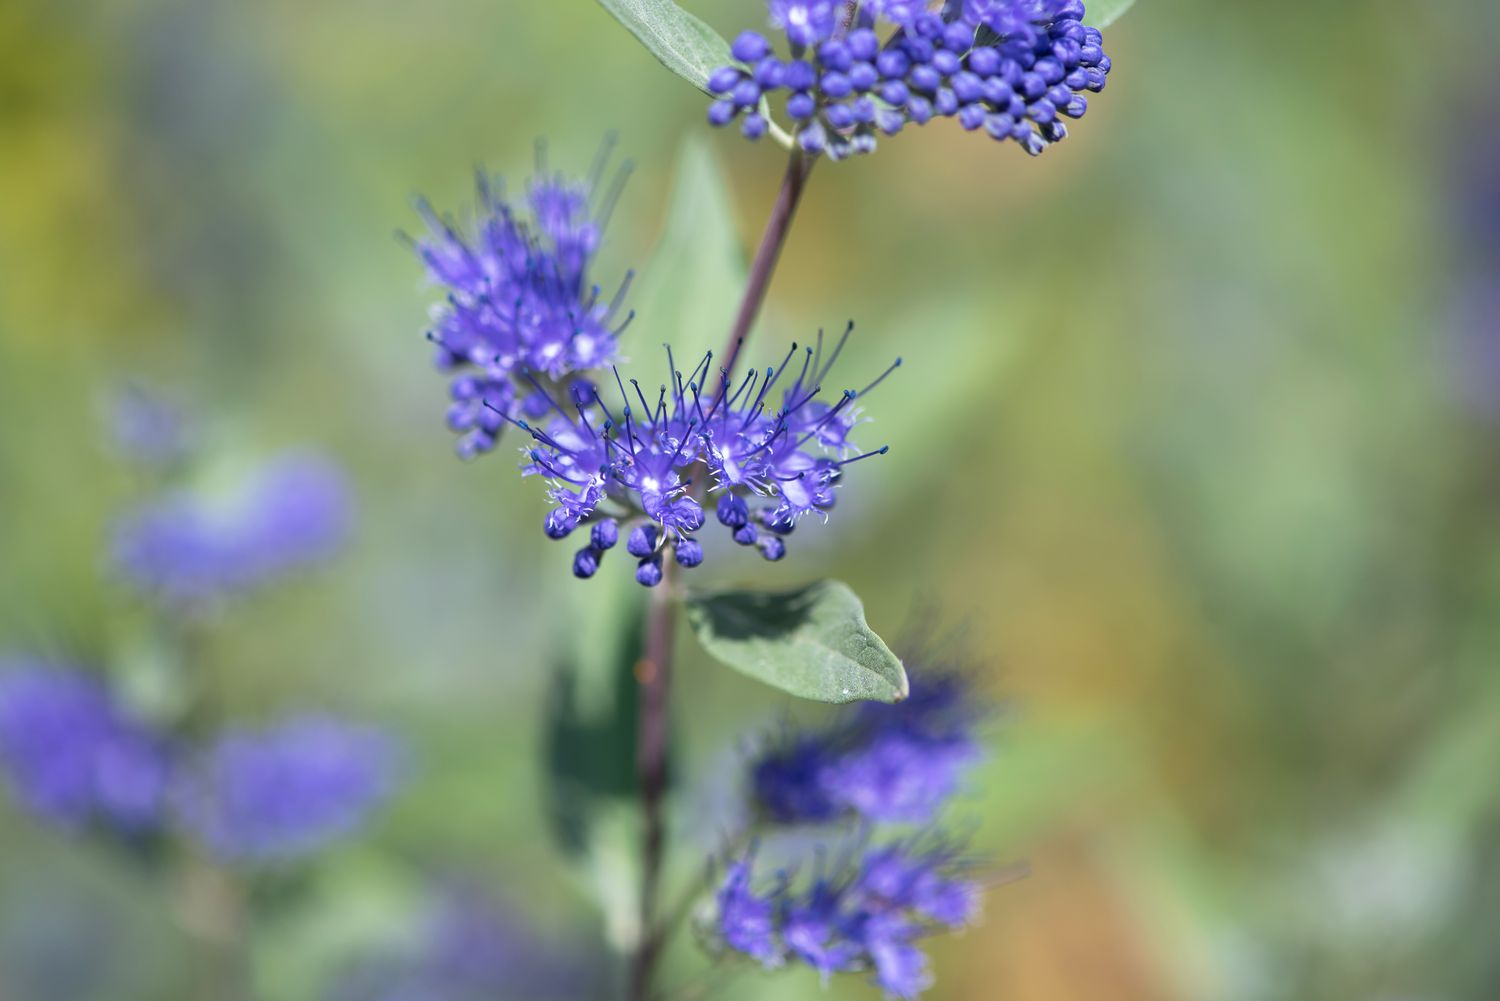 Blaubartpflanze mit winzigen lila Blütenbüscheln in Nahaufnahme